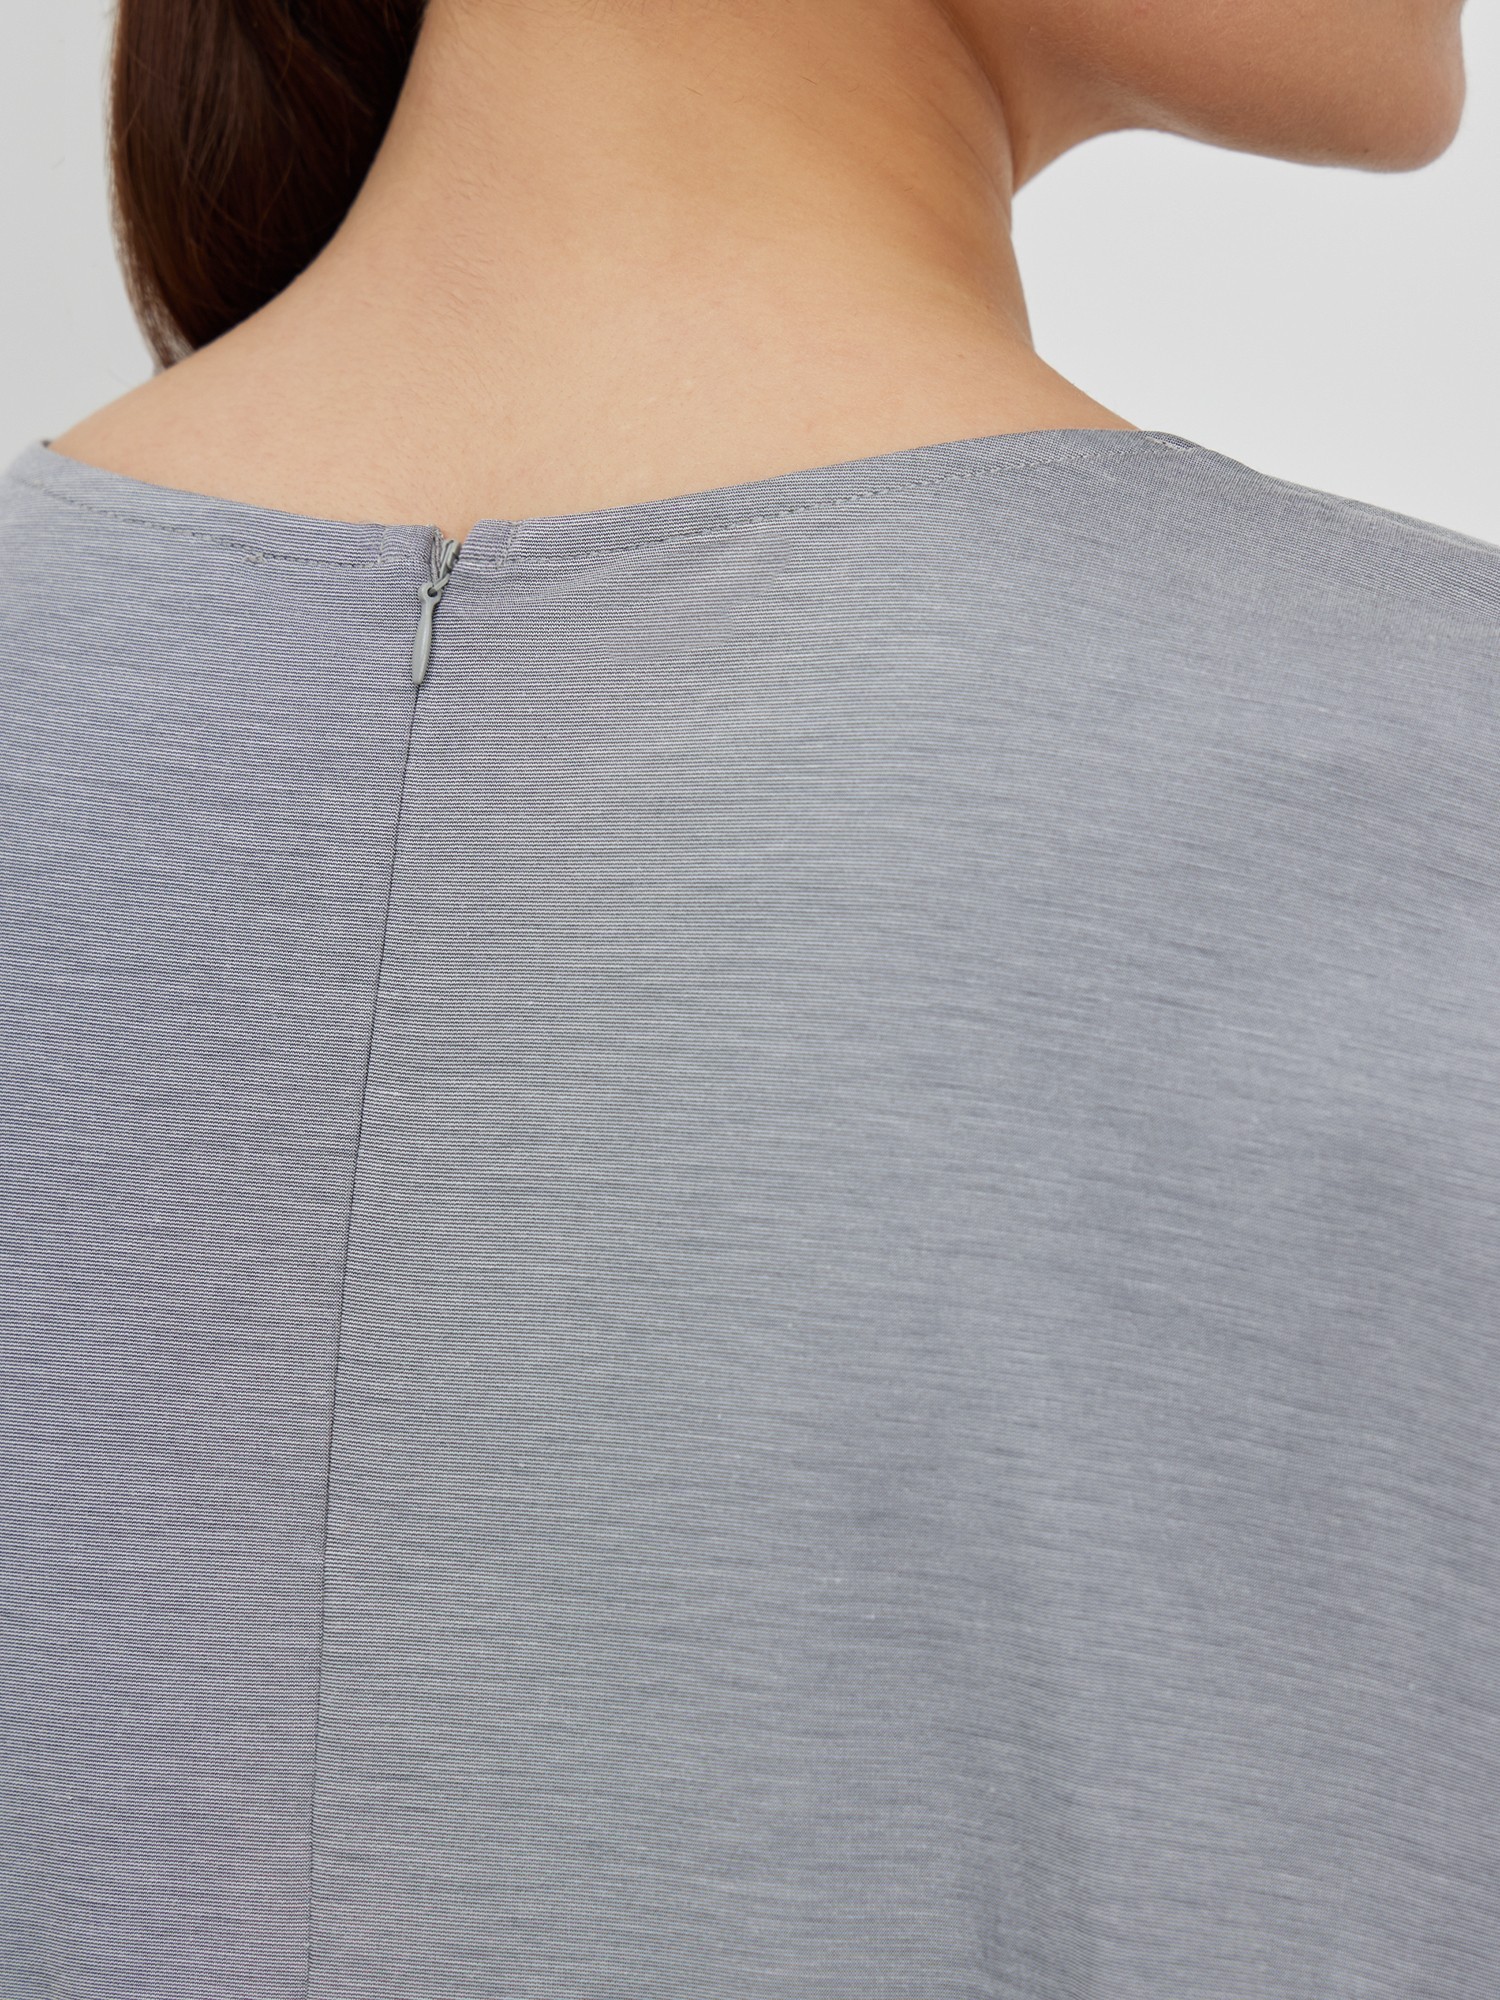 Блуза трикотажная с декором Lalis BL0691K, цвет серый меланж, размер 54 - фото 5